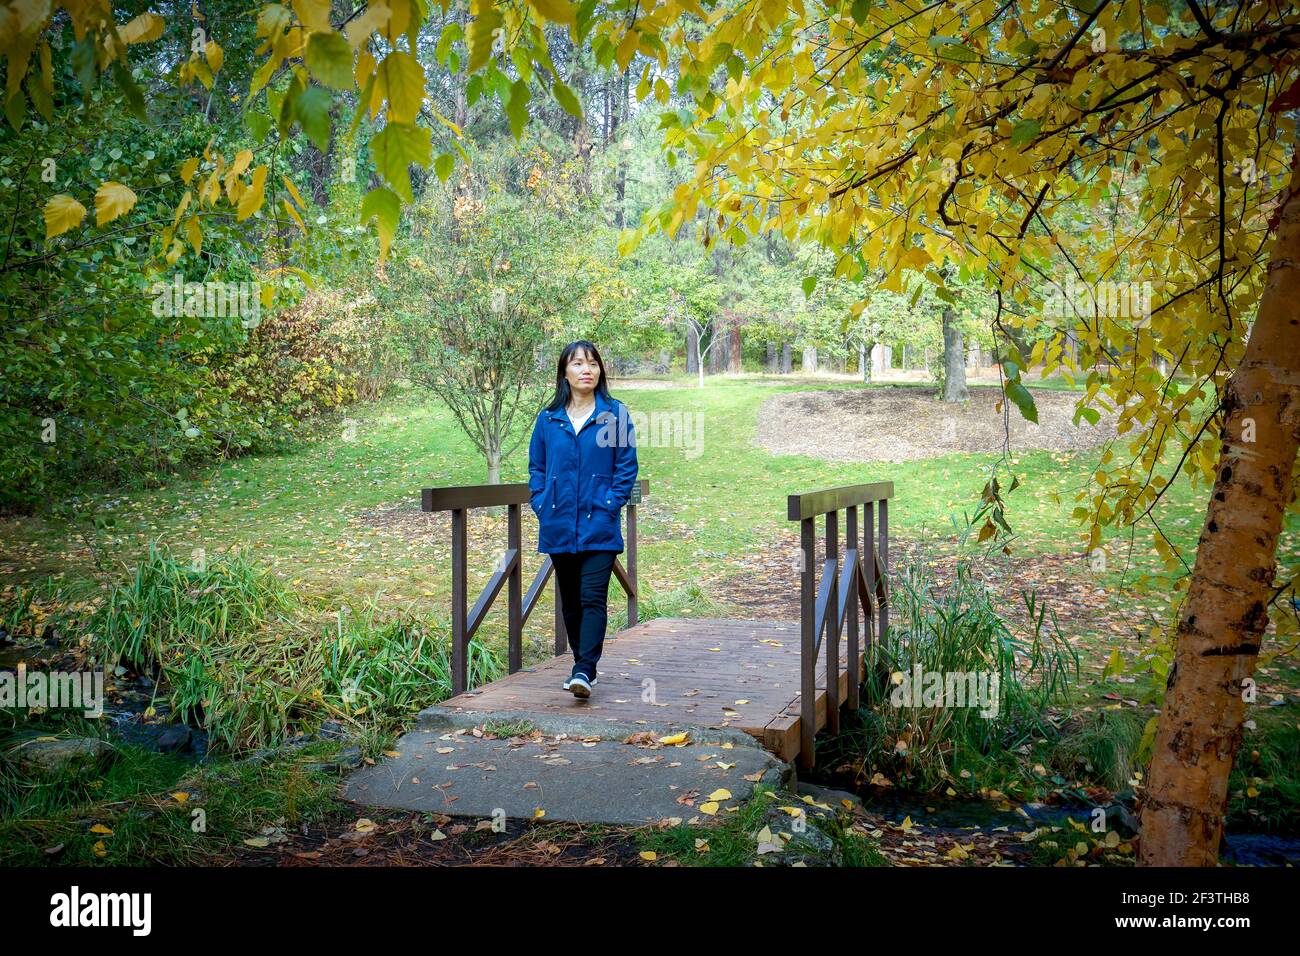 Une femme coréenne traverse une petite passerelle en automne à l'arboretum Finch de Spokane, Washington, États-Unis. Banque D'Images